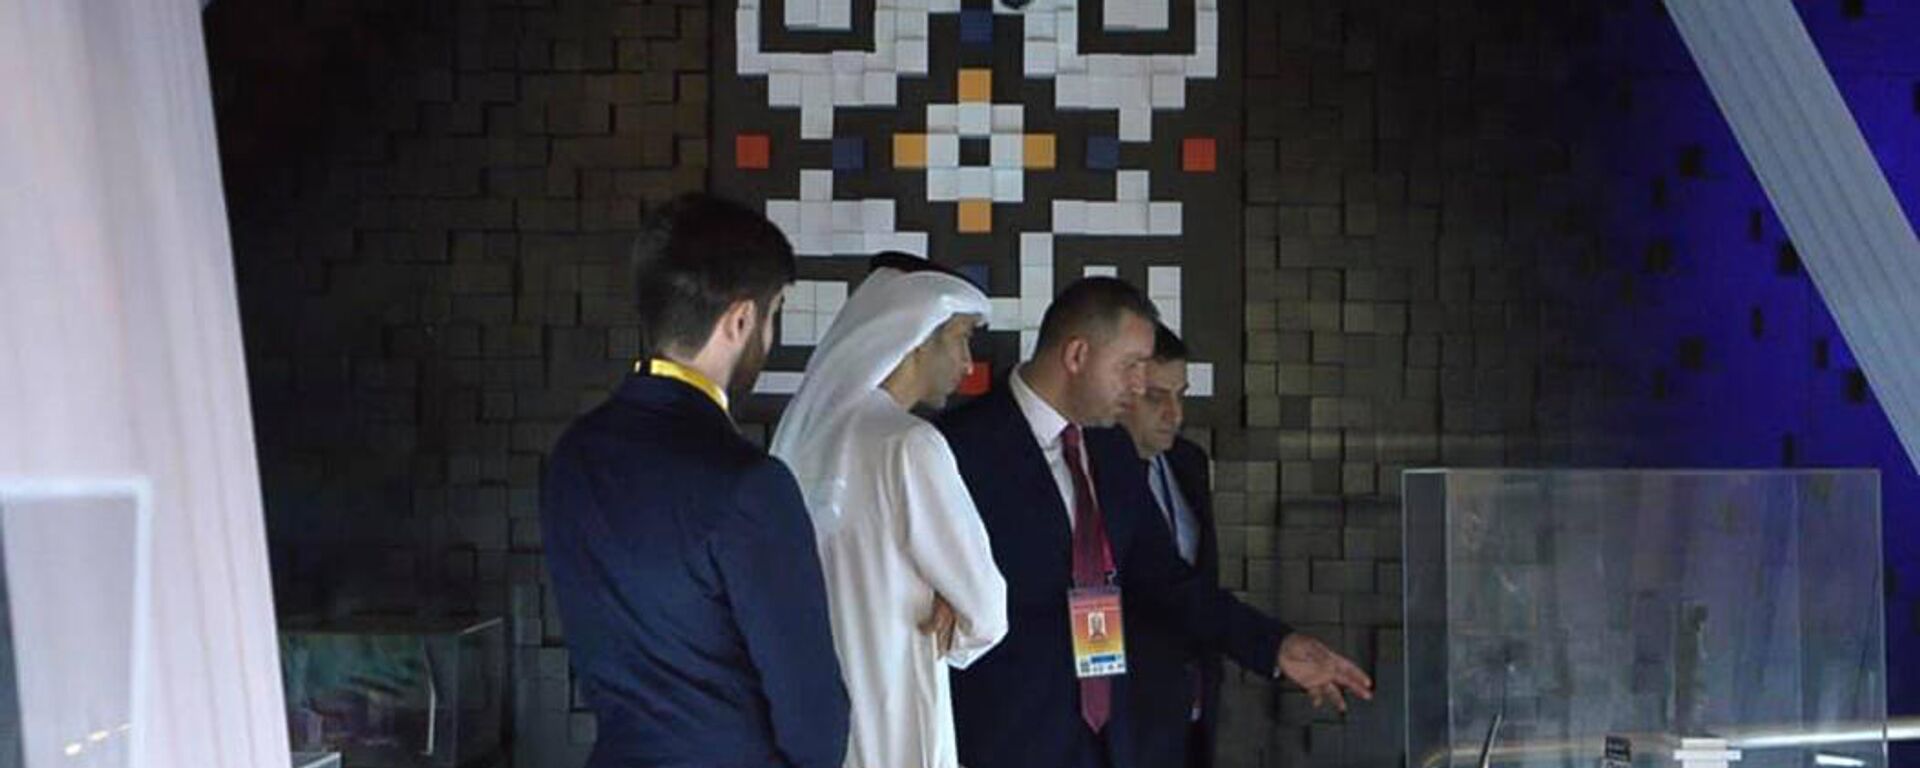 Министры внешней торговли ОАЭ Тани бин Ахмед Аль-Зеюди и экономики Армении Ваган Керобян в армянском павильоне на EXPO 2020 Dubai (1 октября 2021). Дубай - Sputnik Արմենիա, 1920, 02.10.2021